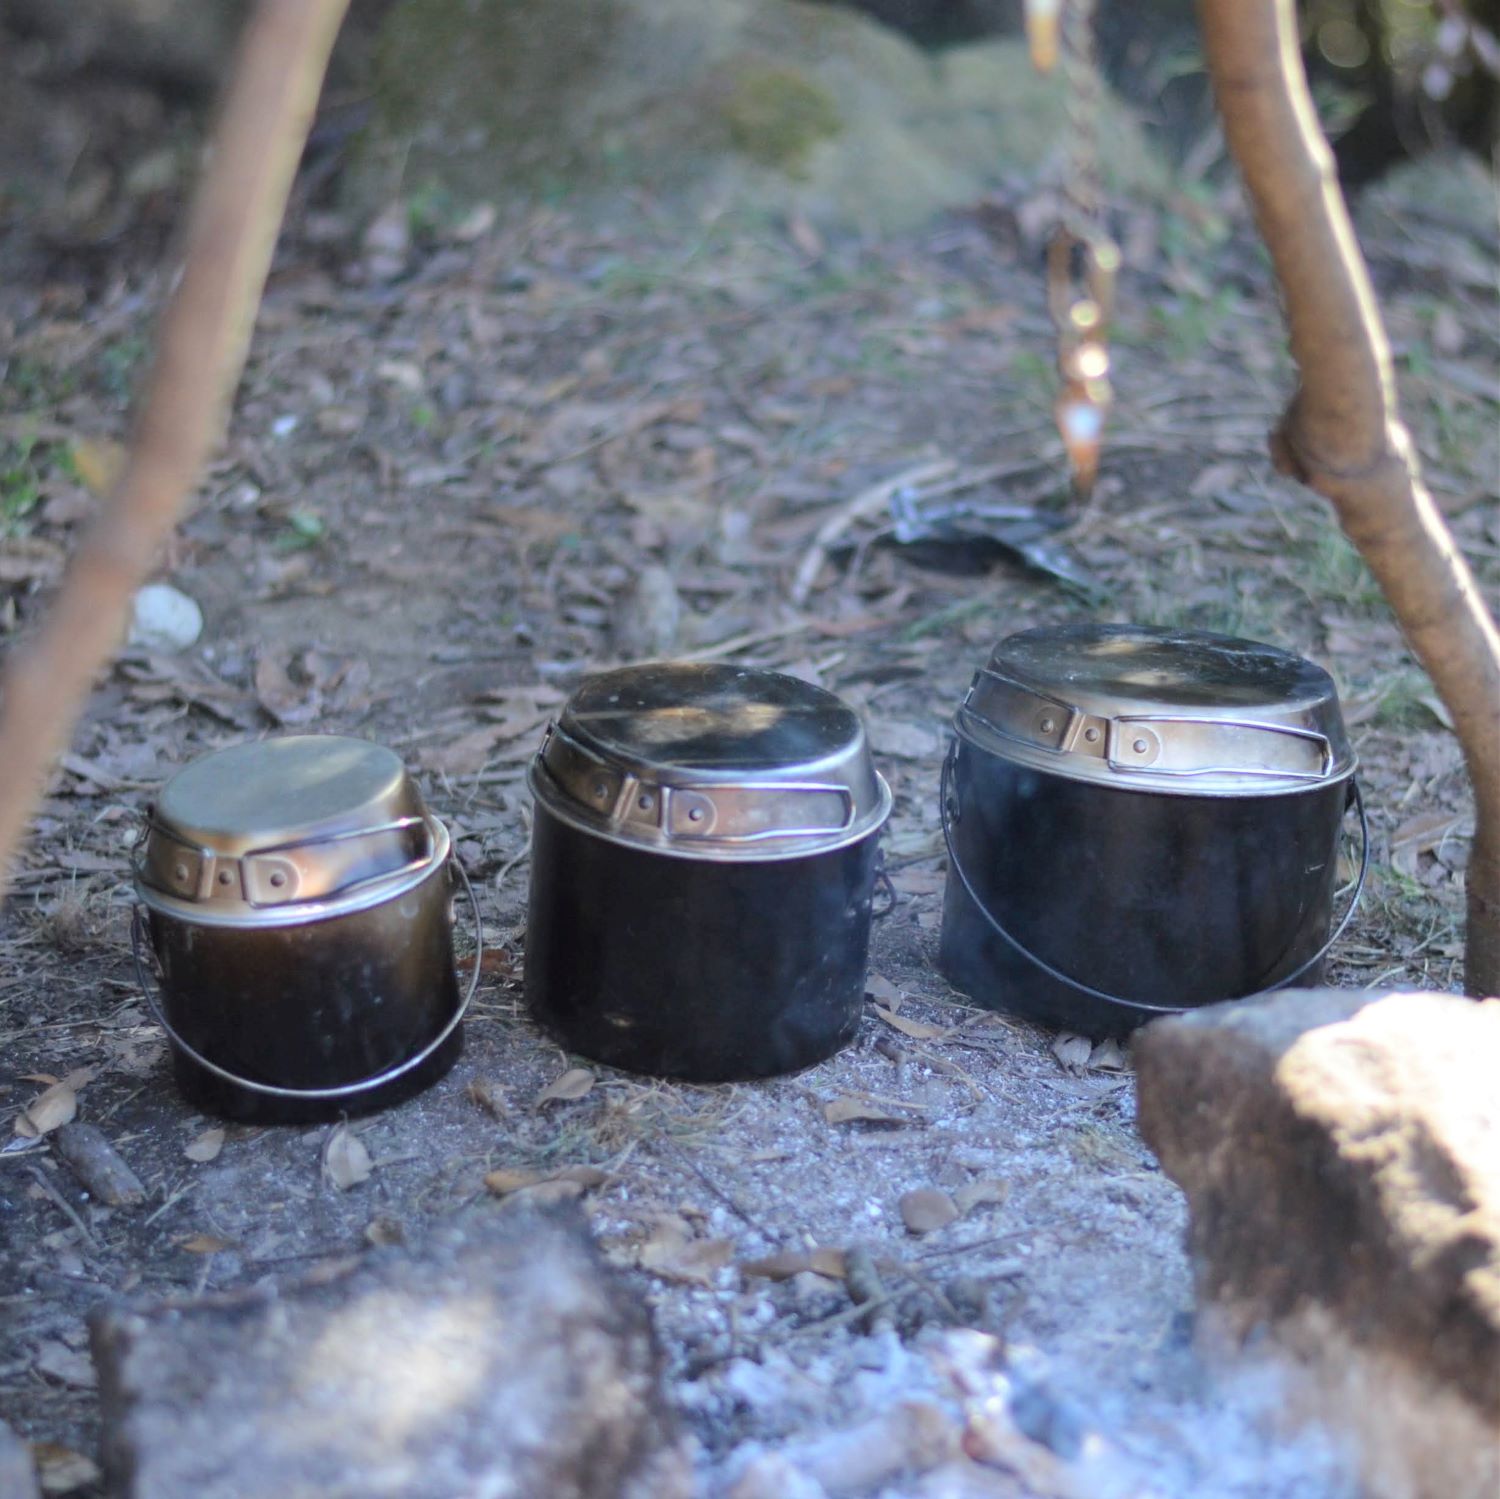 焚火での調理に最適なクッカー Dugの焚火缶が魅力的な５つの理由 調理器具 食器 Be Pal キャンプ アウトドア 自然派生活の情報源ビーパル